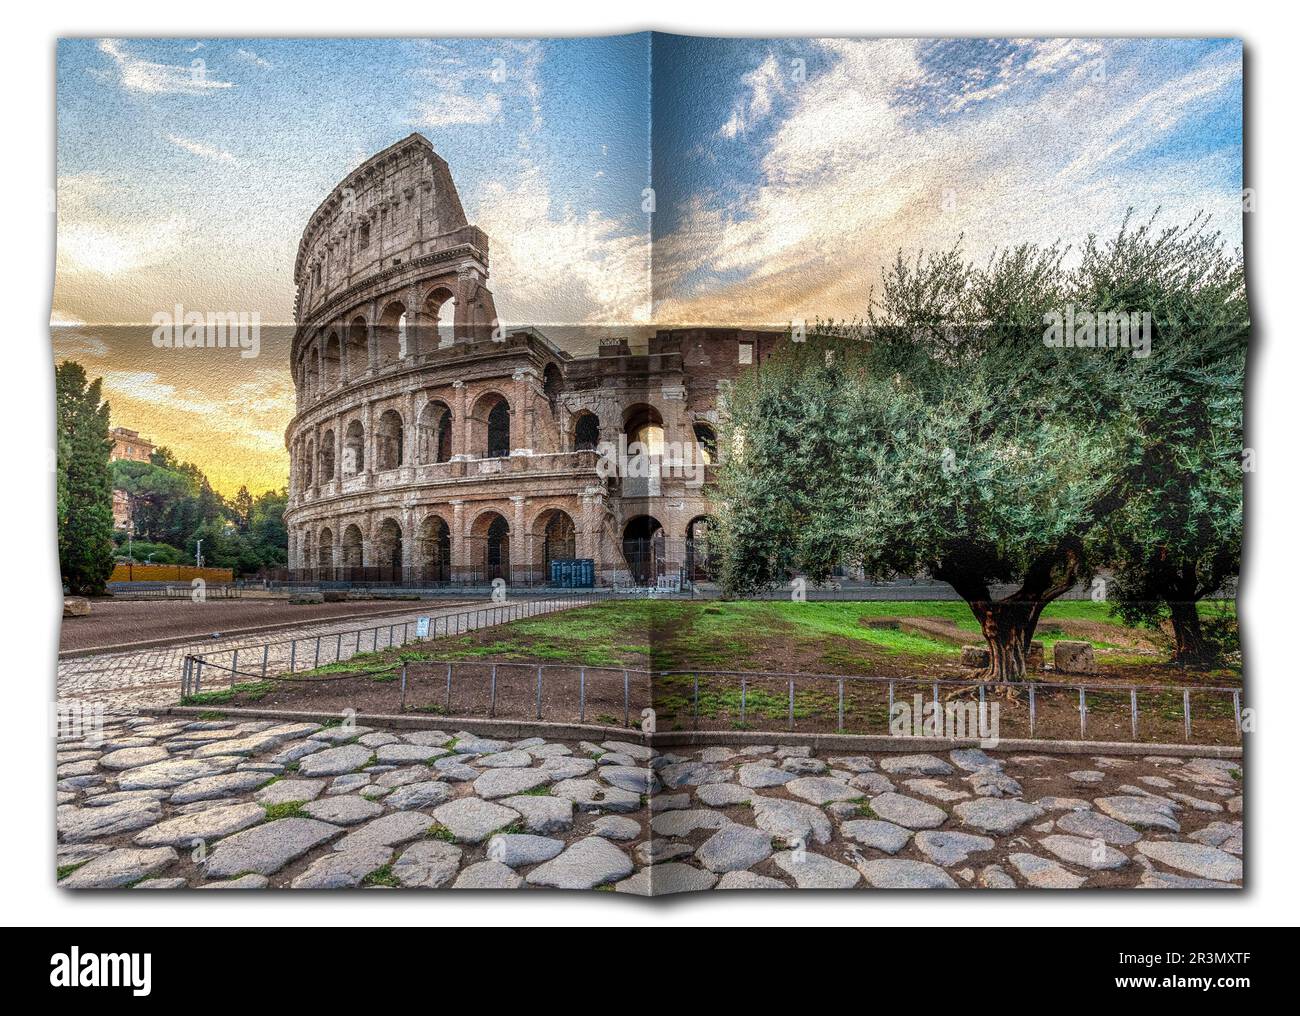 Italia, Roma - Colosseo romano con cielo tramonto, il più famoso punto di riferimento italiano. Foto Stock